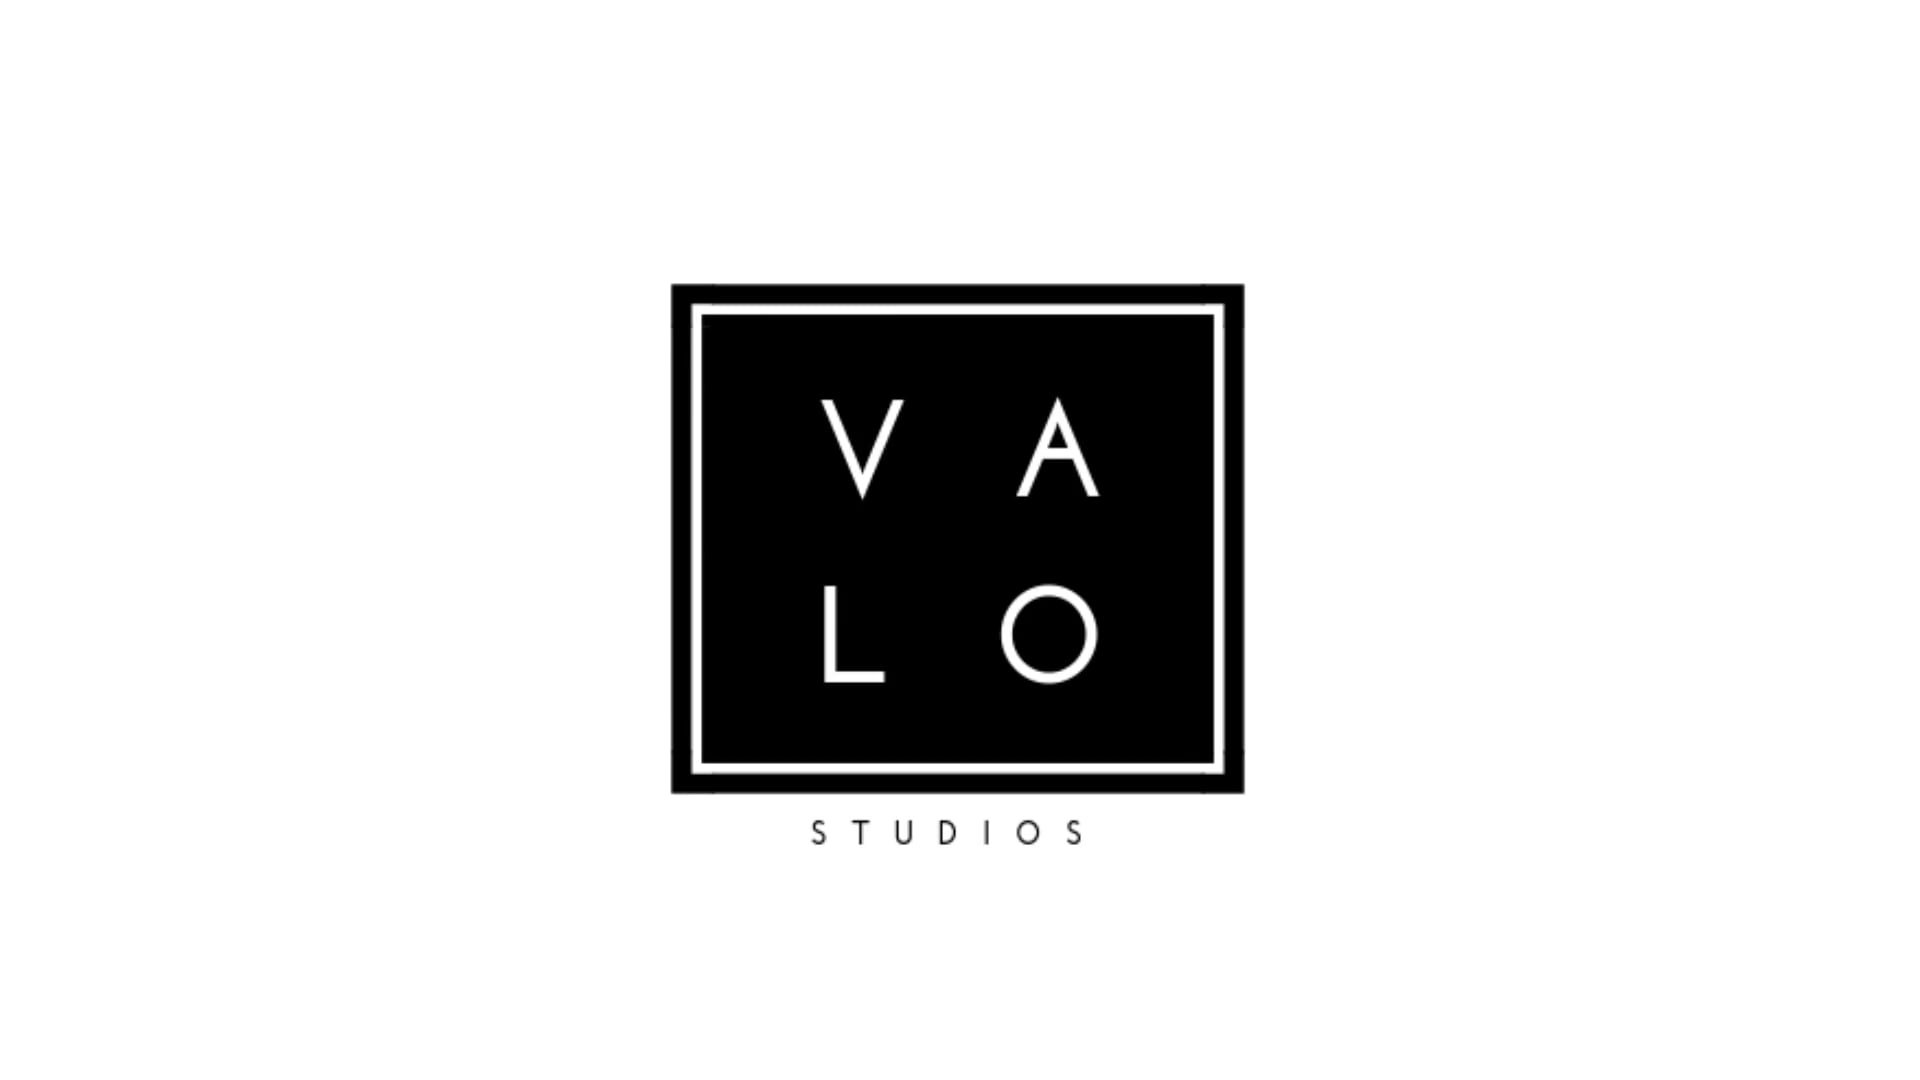 VALO STUDIOS 1